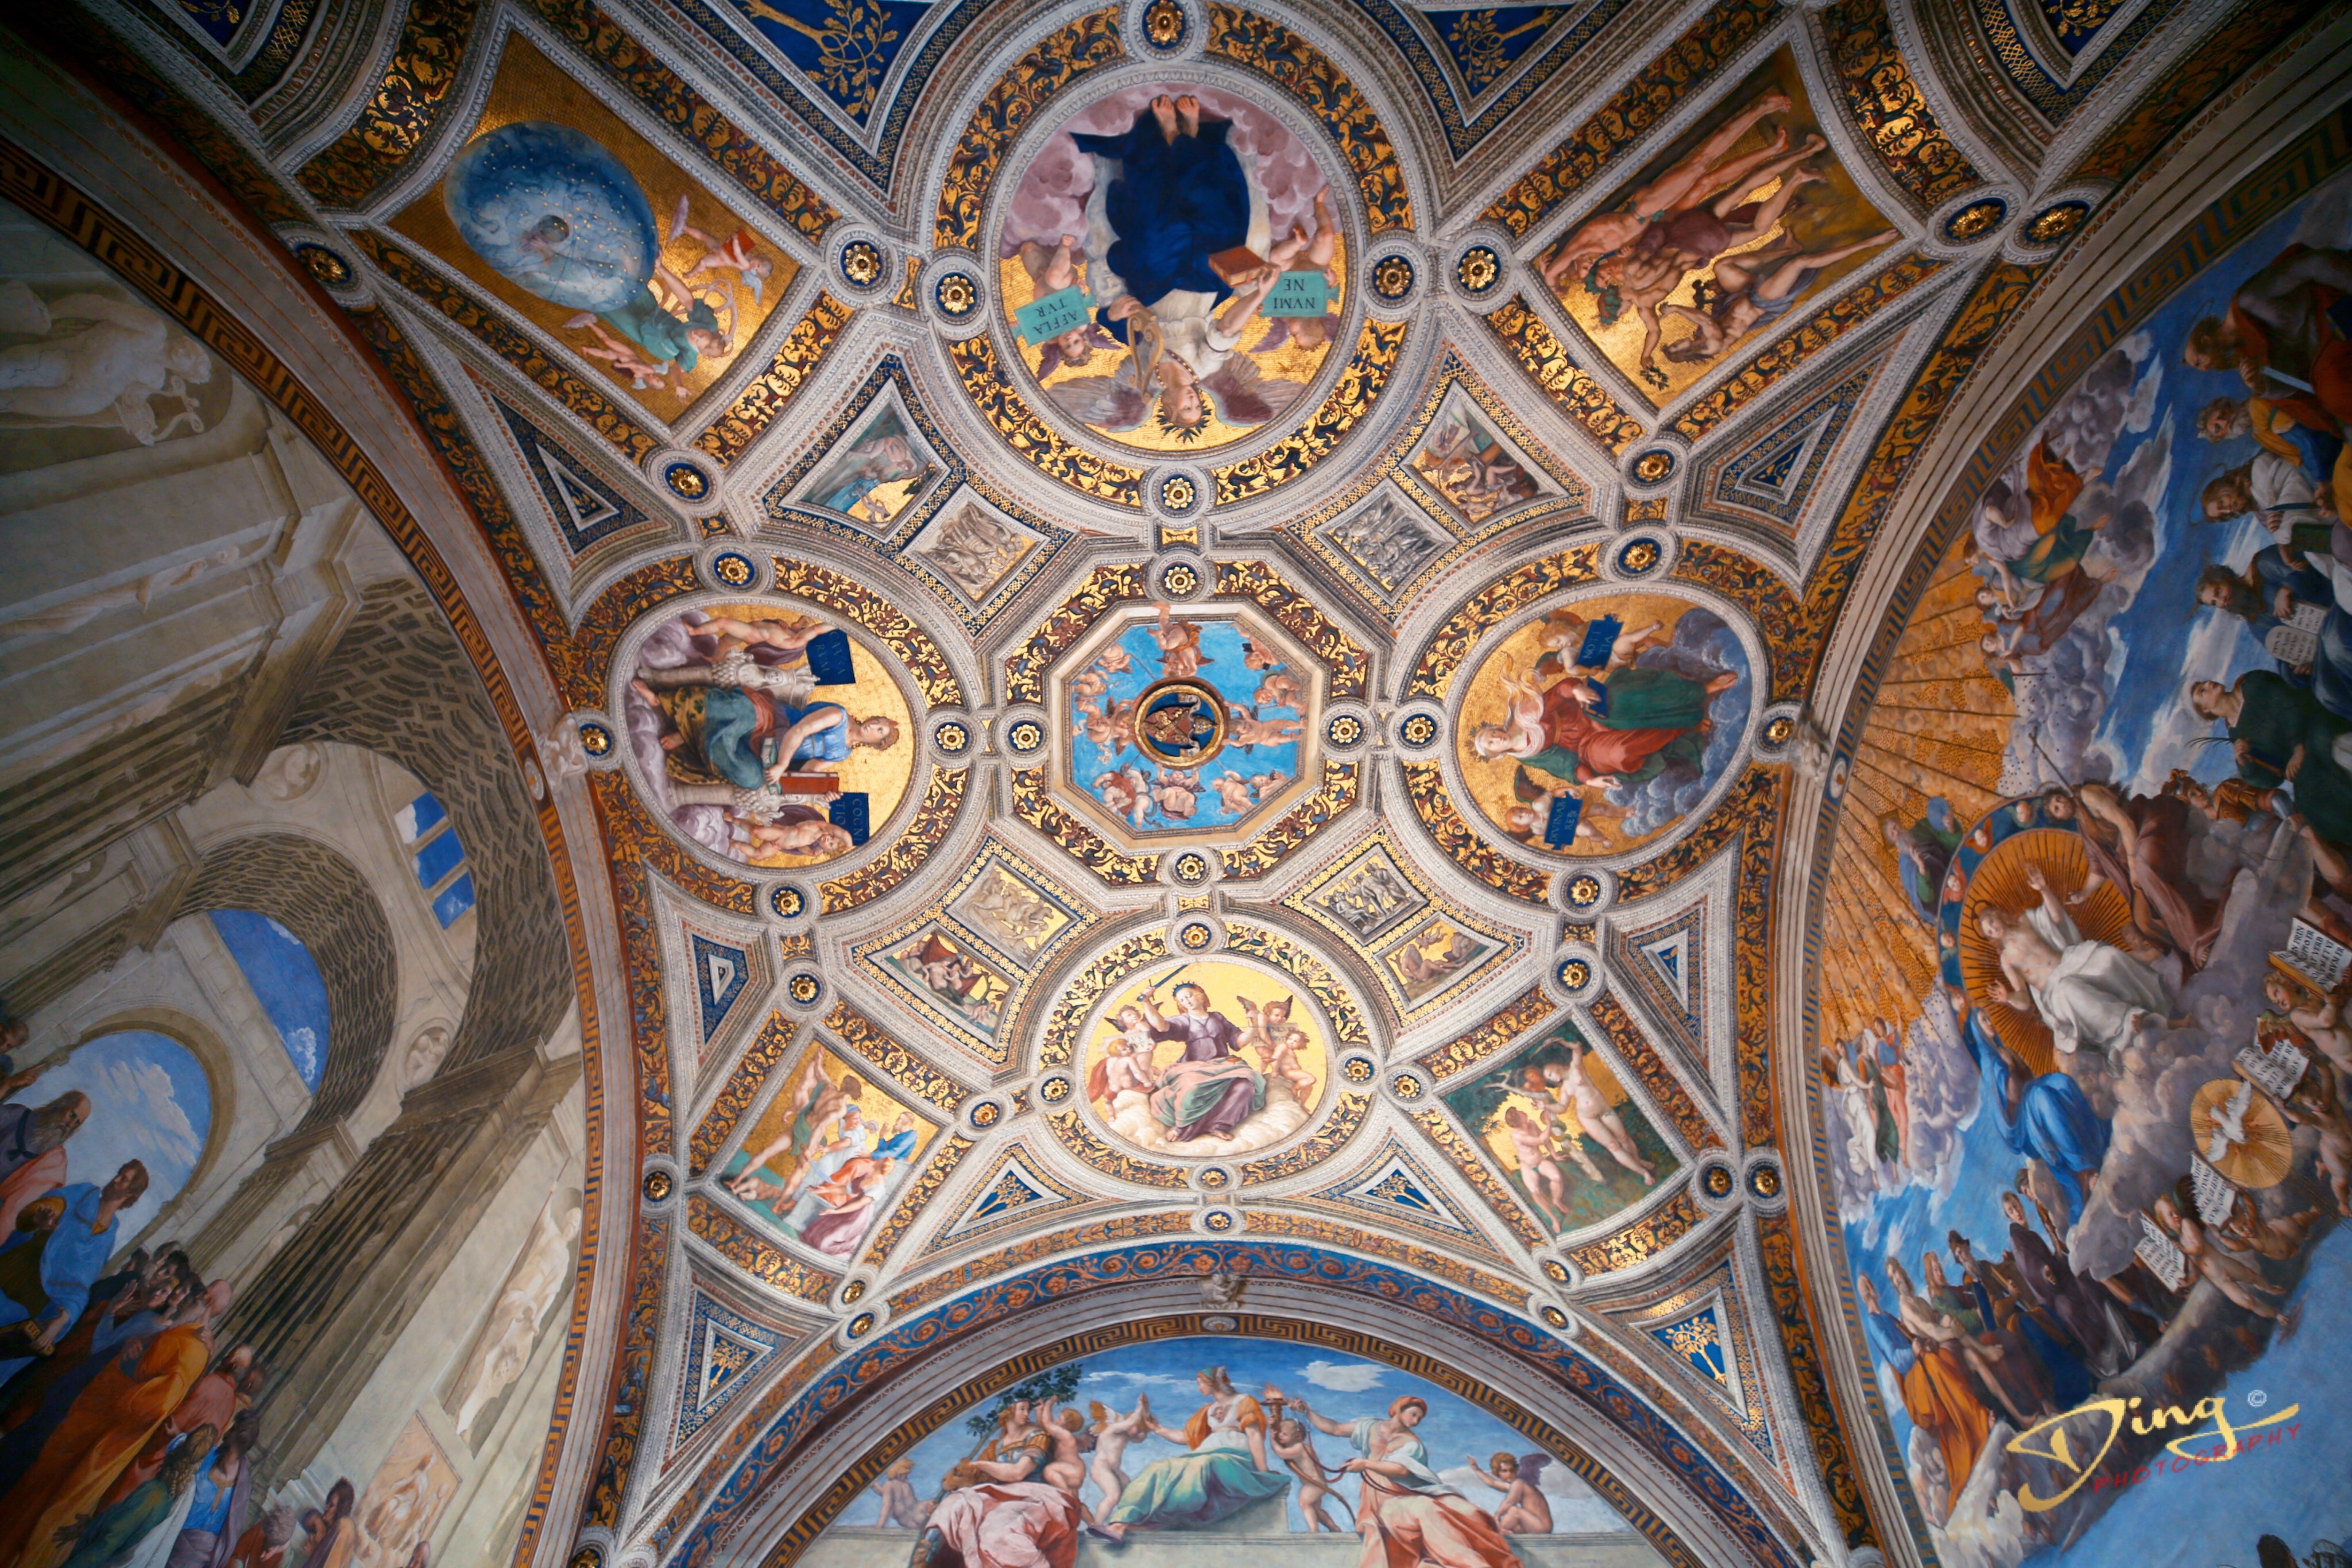 原创一座会生长的博物馆从古至今梵蒂冈有世上无与伦比的艺术珍品